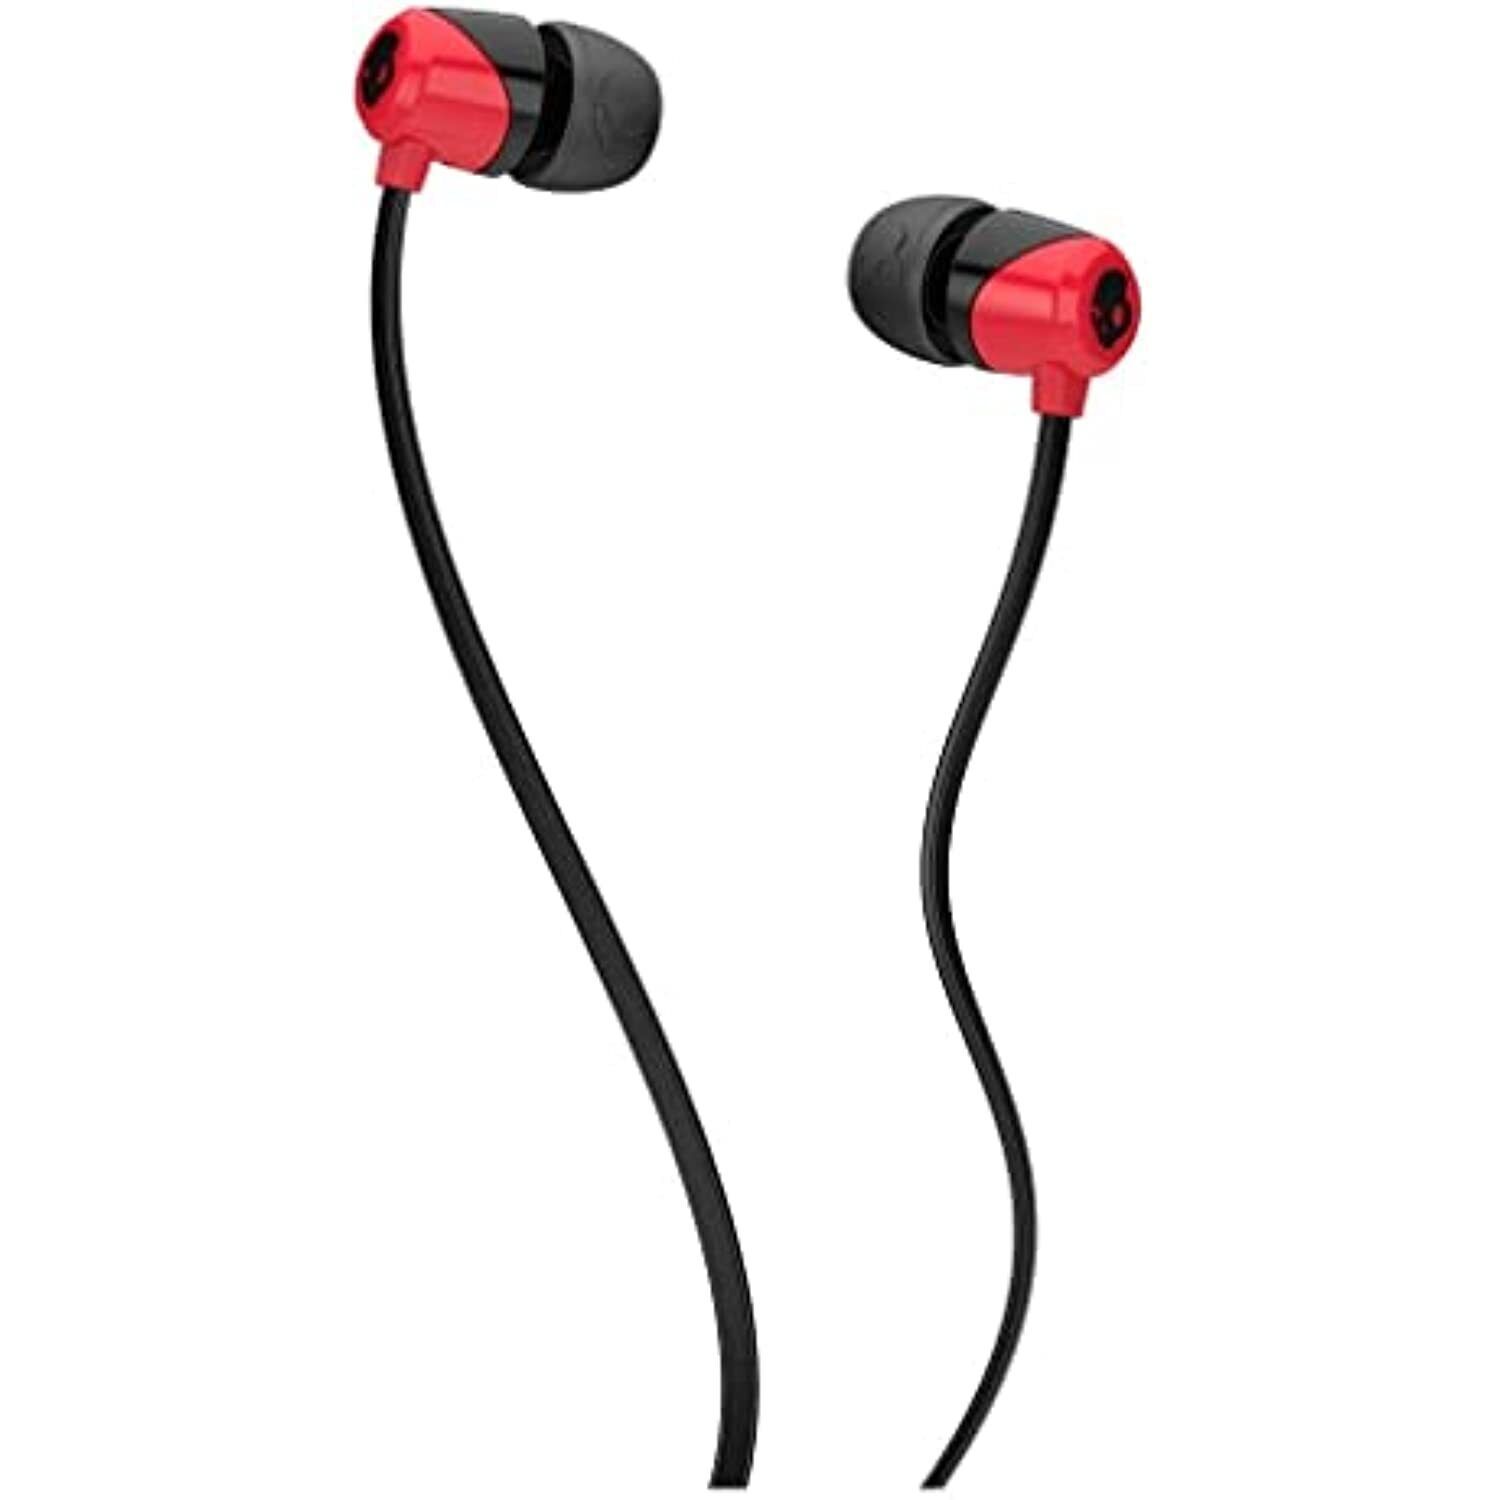 Primary image for Skullcandy Jib in-Ear Earbuds Headphones - Red/Black